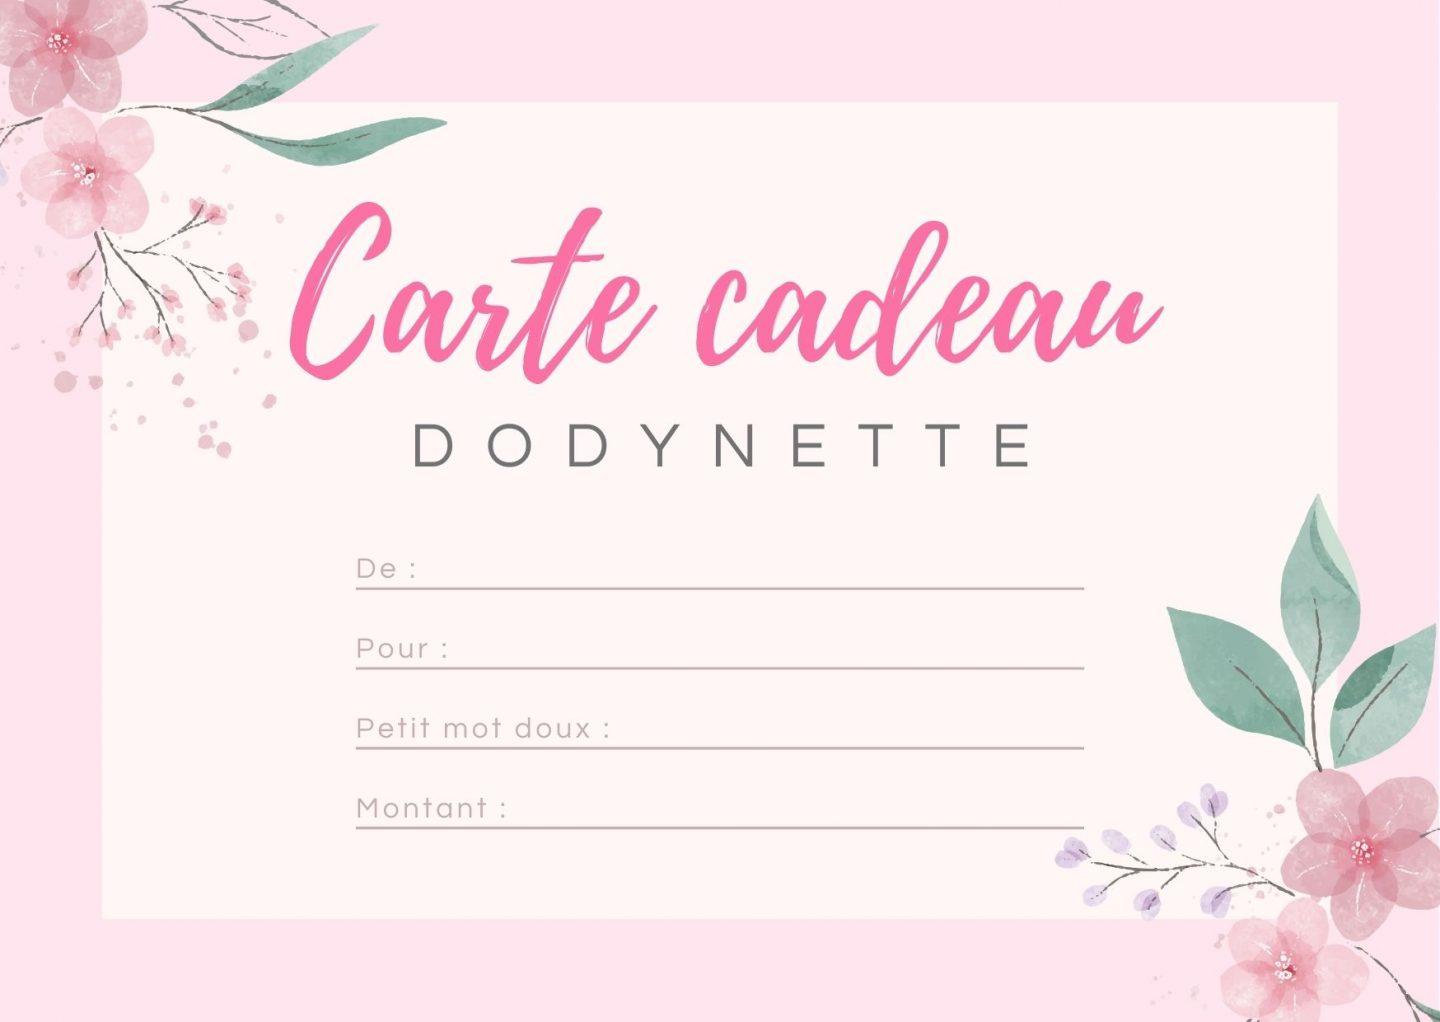 La Carte Cadeau Dodynette - Dodynette